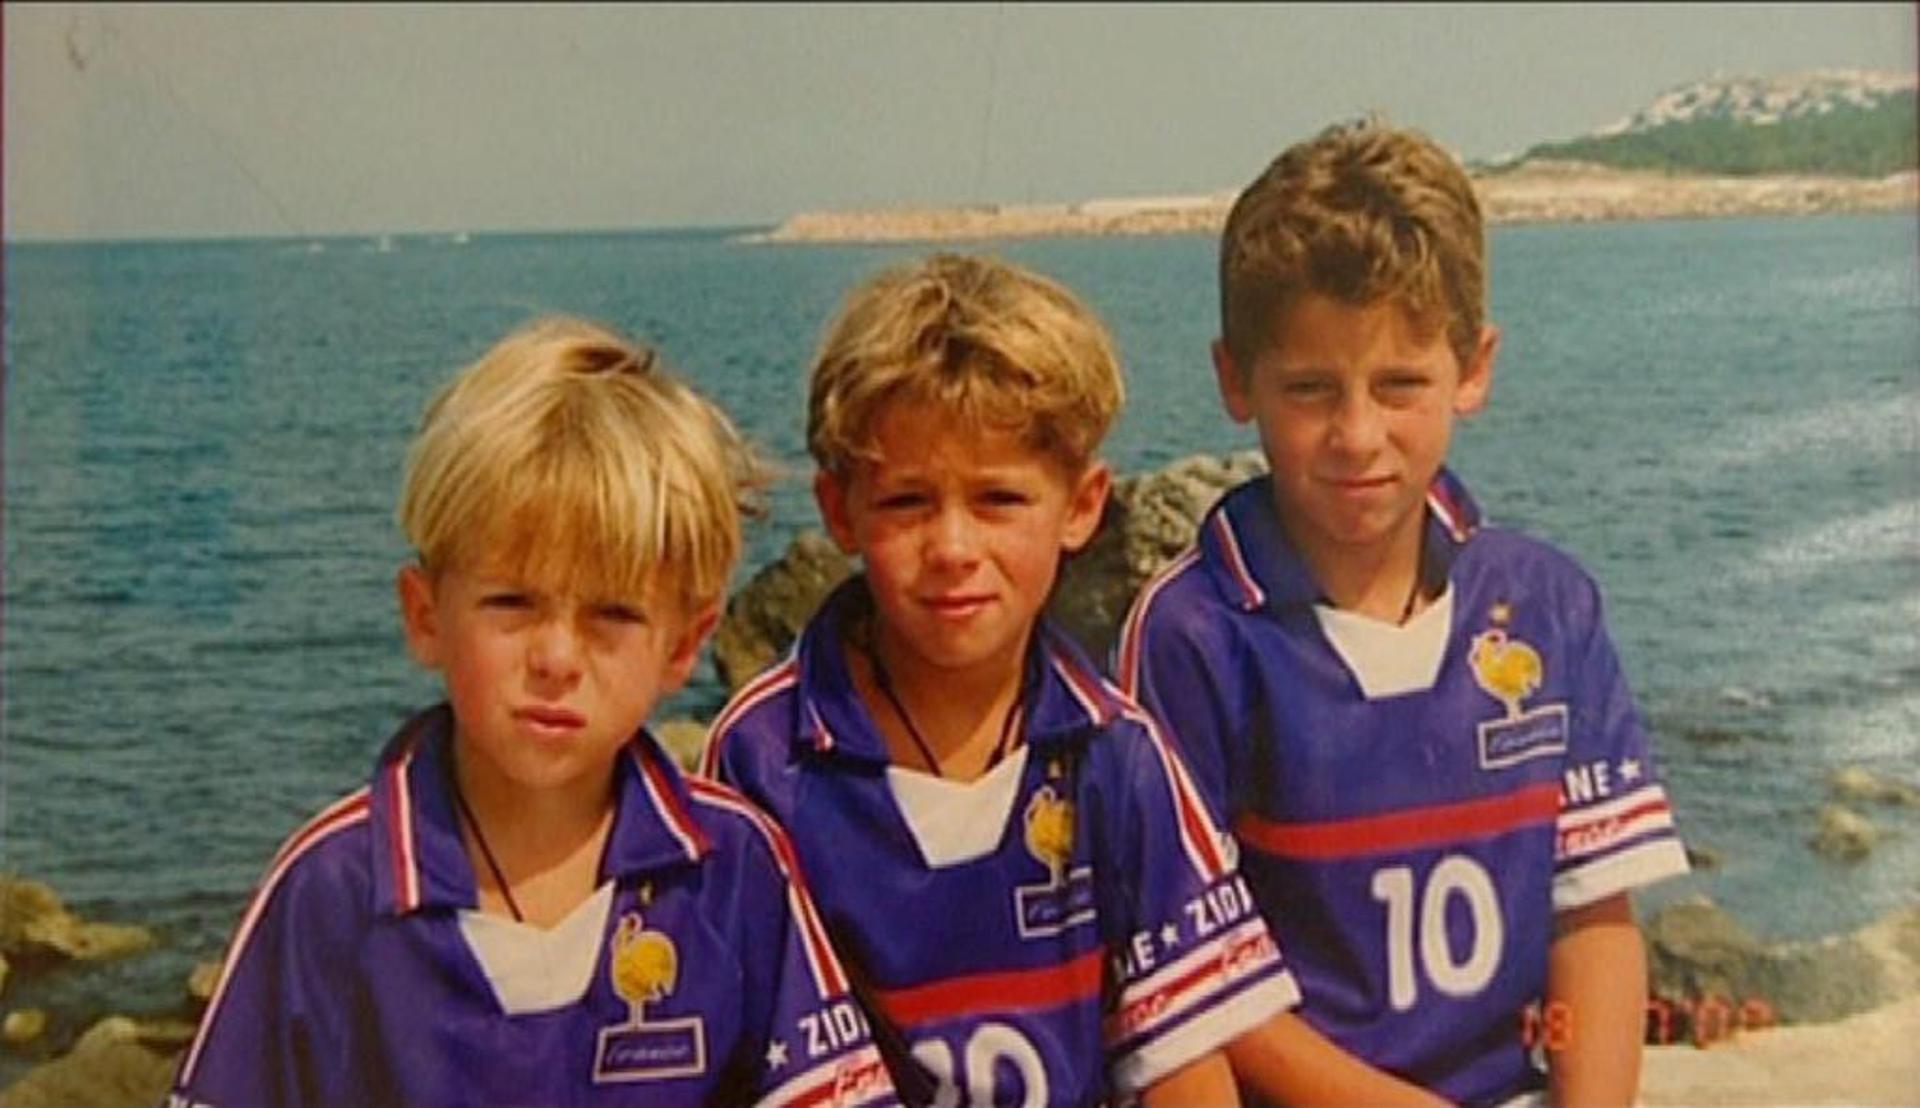 Kylian, Thorgan e Eden Hazard, pela ordem, os irmãos em 1998 torcendo pela França na Copa